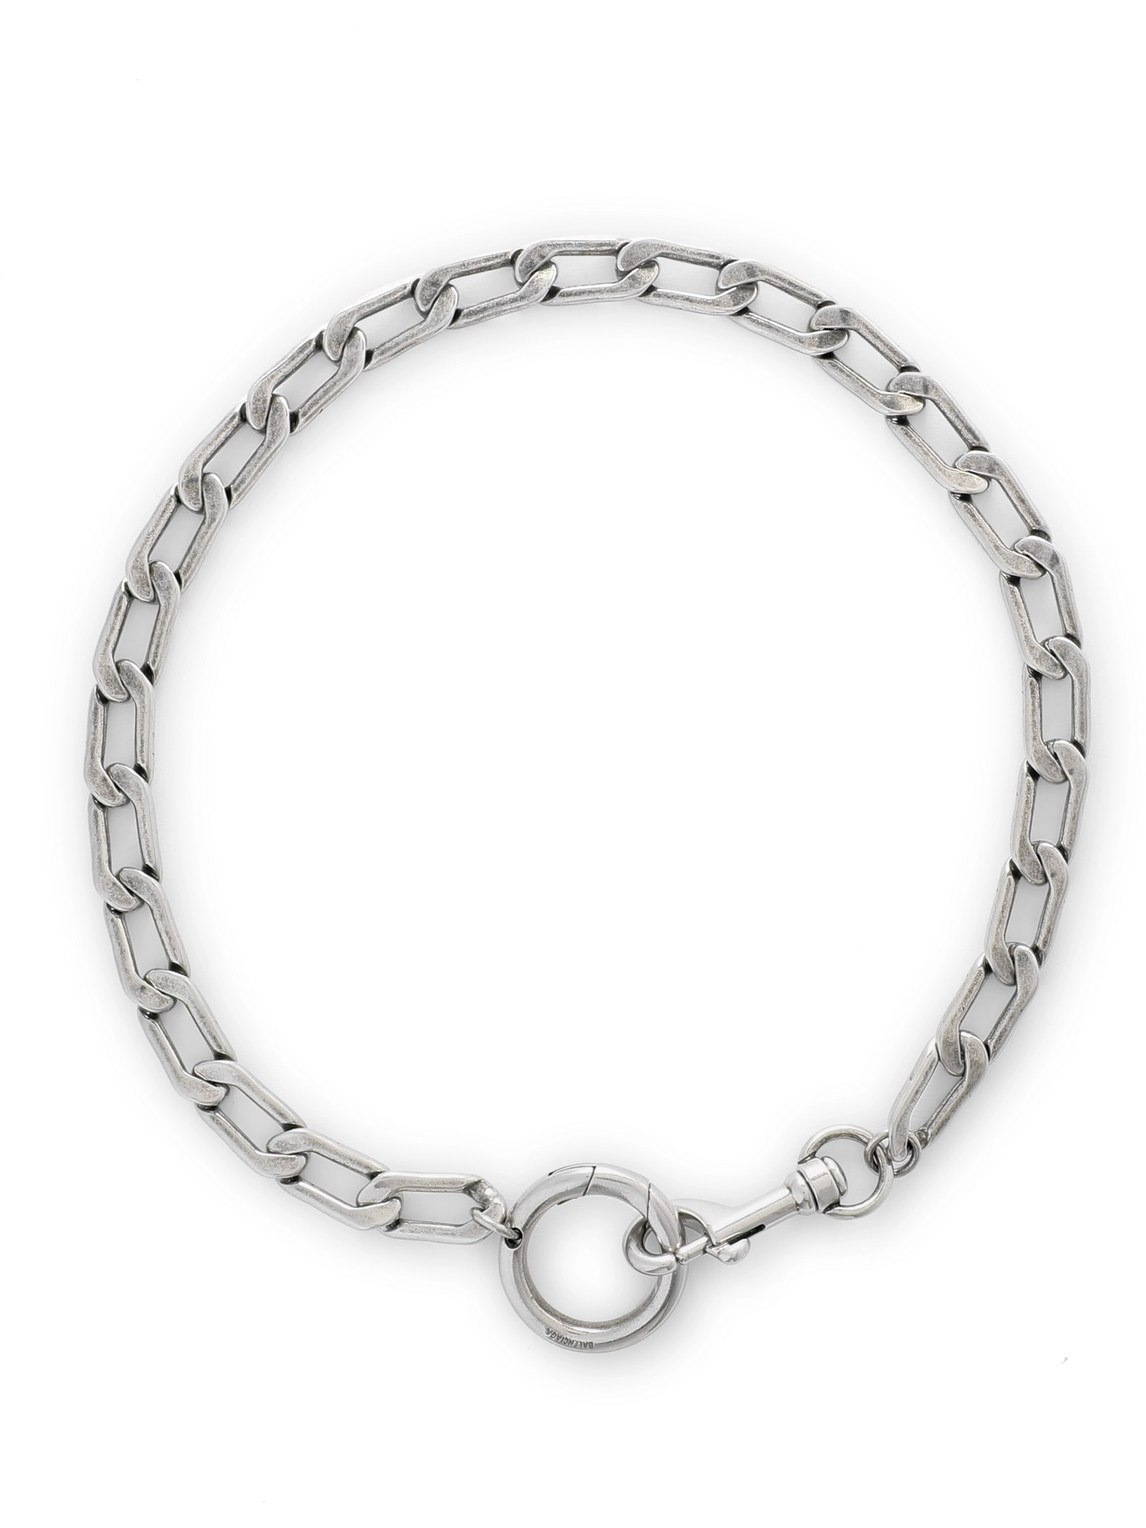 Balenciaga Antiqued Silver-tone Chain Necklace